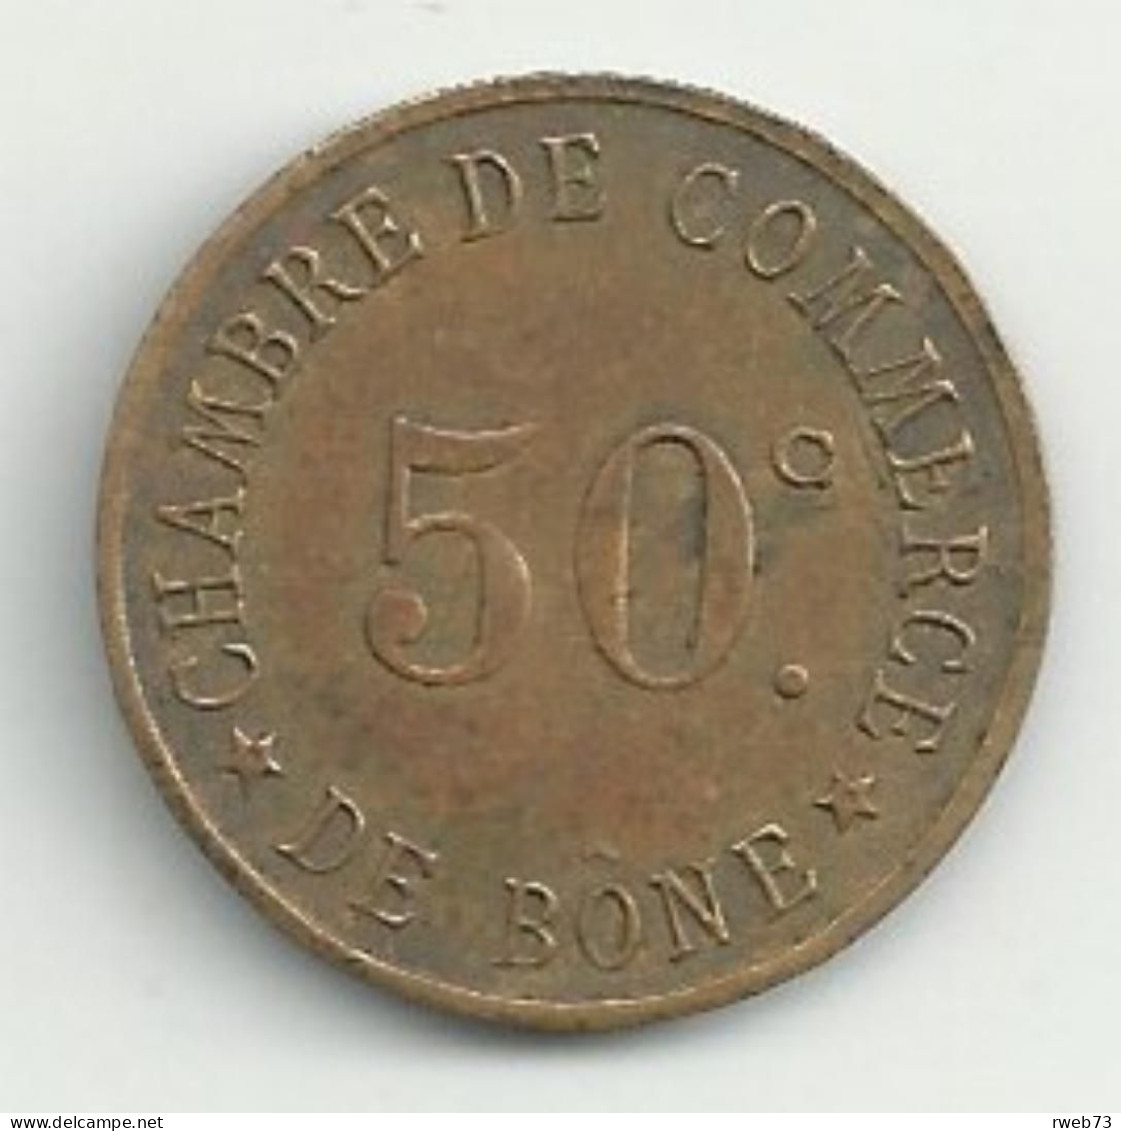 Nécessité - BONE - 50 Centimes - TB/TTB - Monétaires / De Nécessité